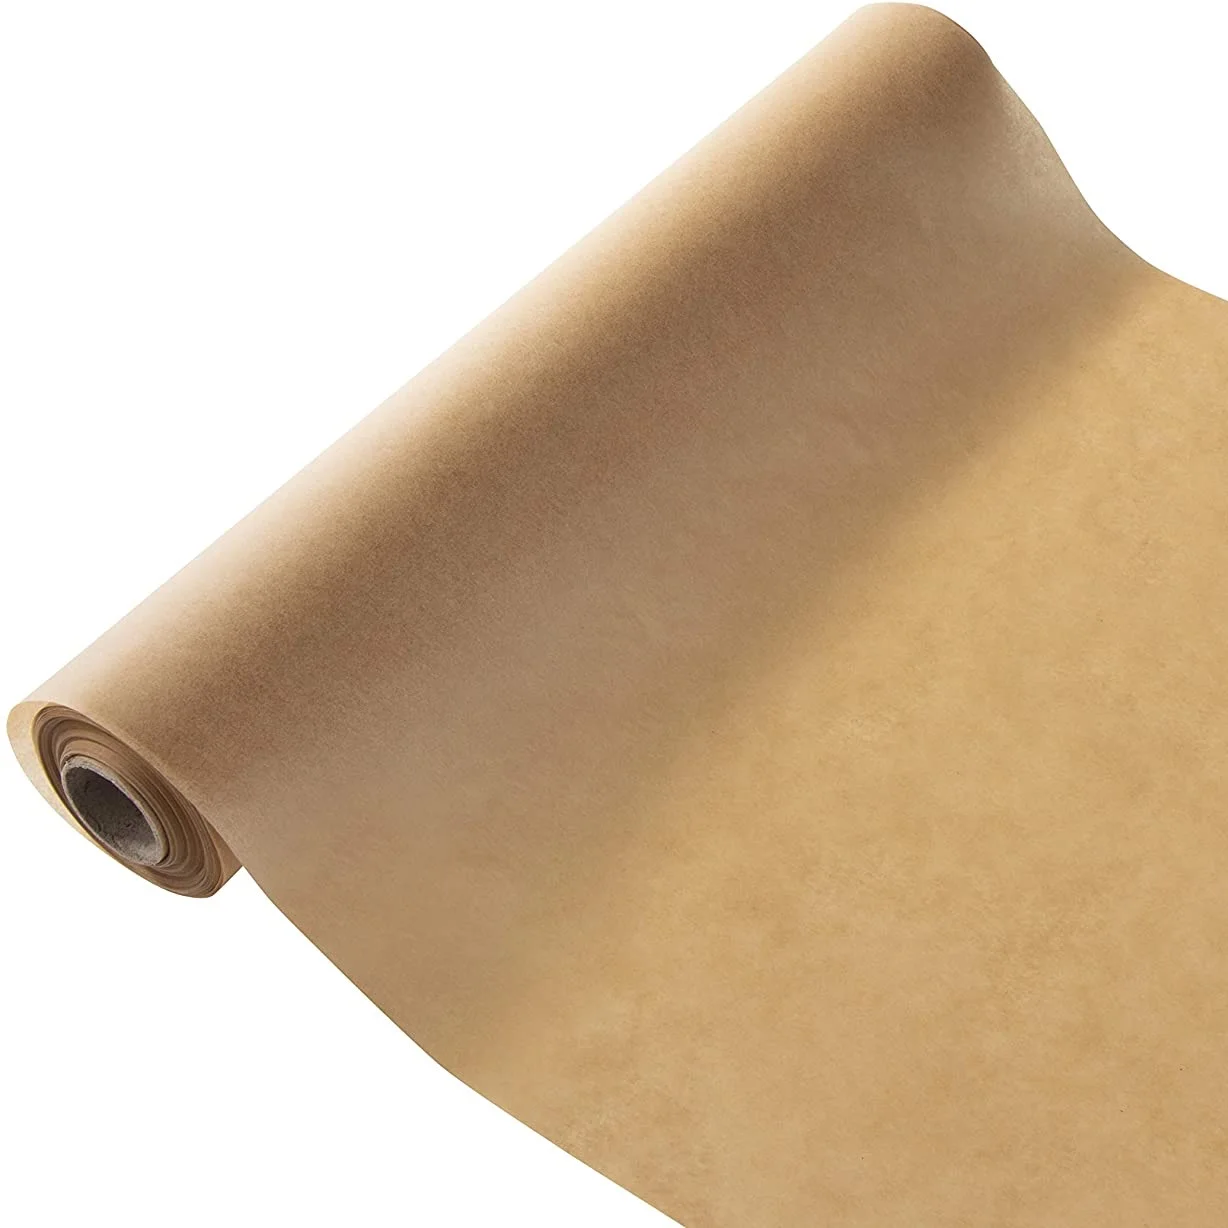 Бумага для выпечки рулон. Натуральная бумага. Пищевая бумага. Falcon Baking paper Roll 10 mx30cm. Бумага naturals